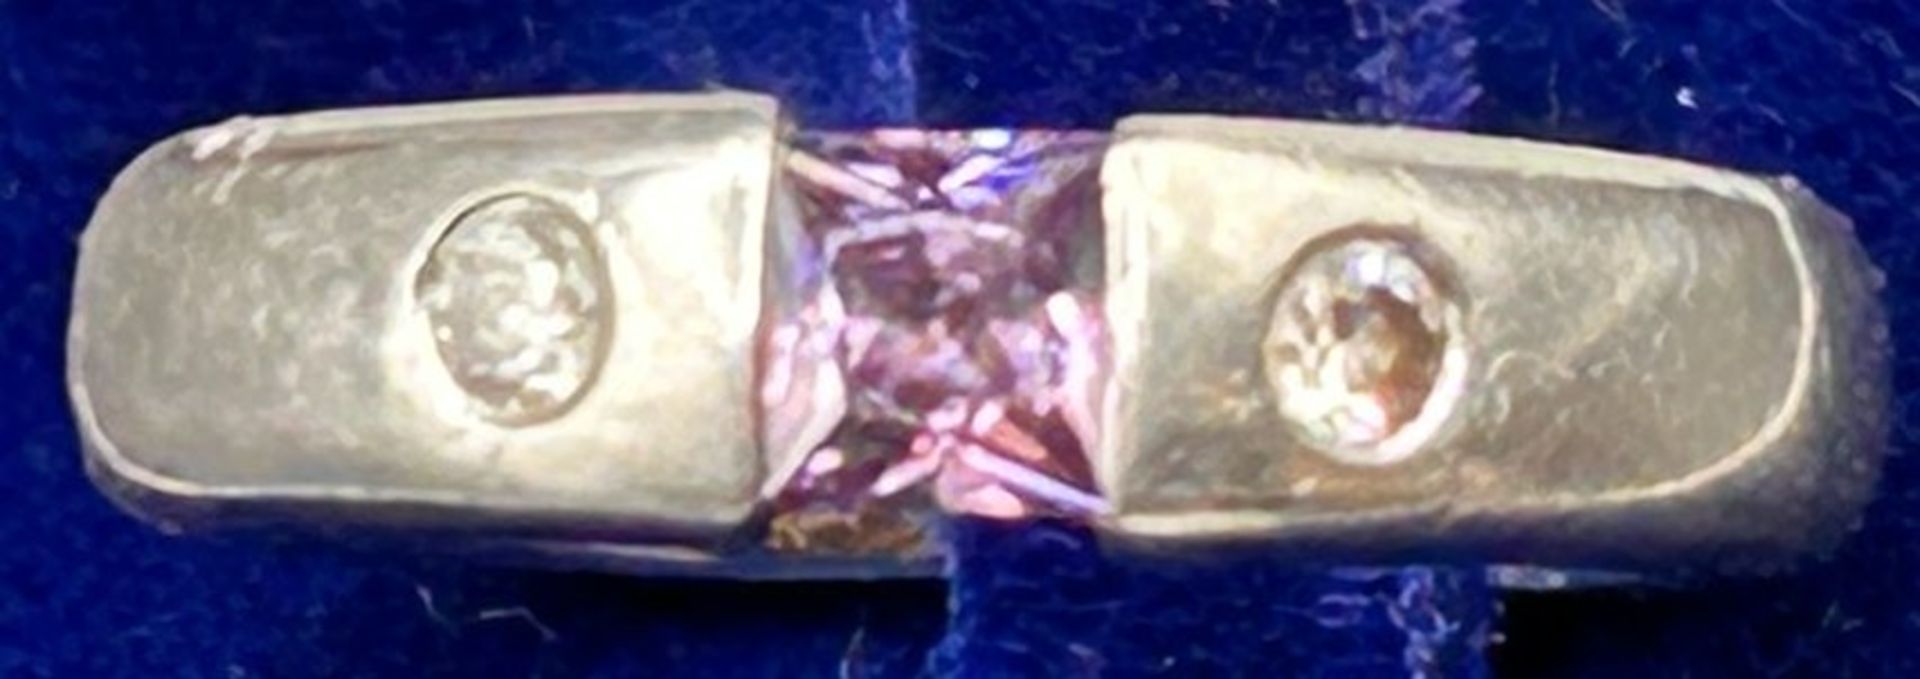 Silber-Spannring mit rosa Stein, 2 klare Steine, -925-RG 57, 6,9 gr. - Image 2 of 3